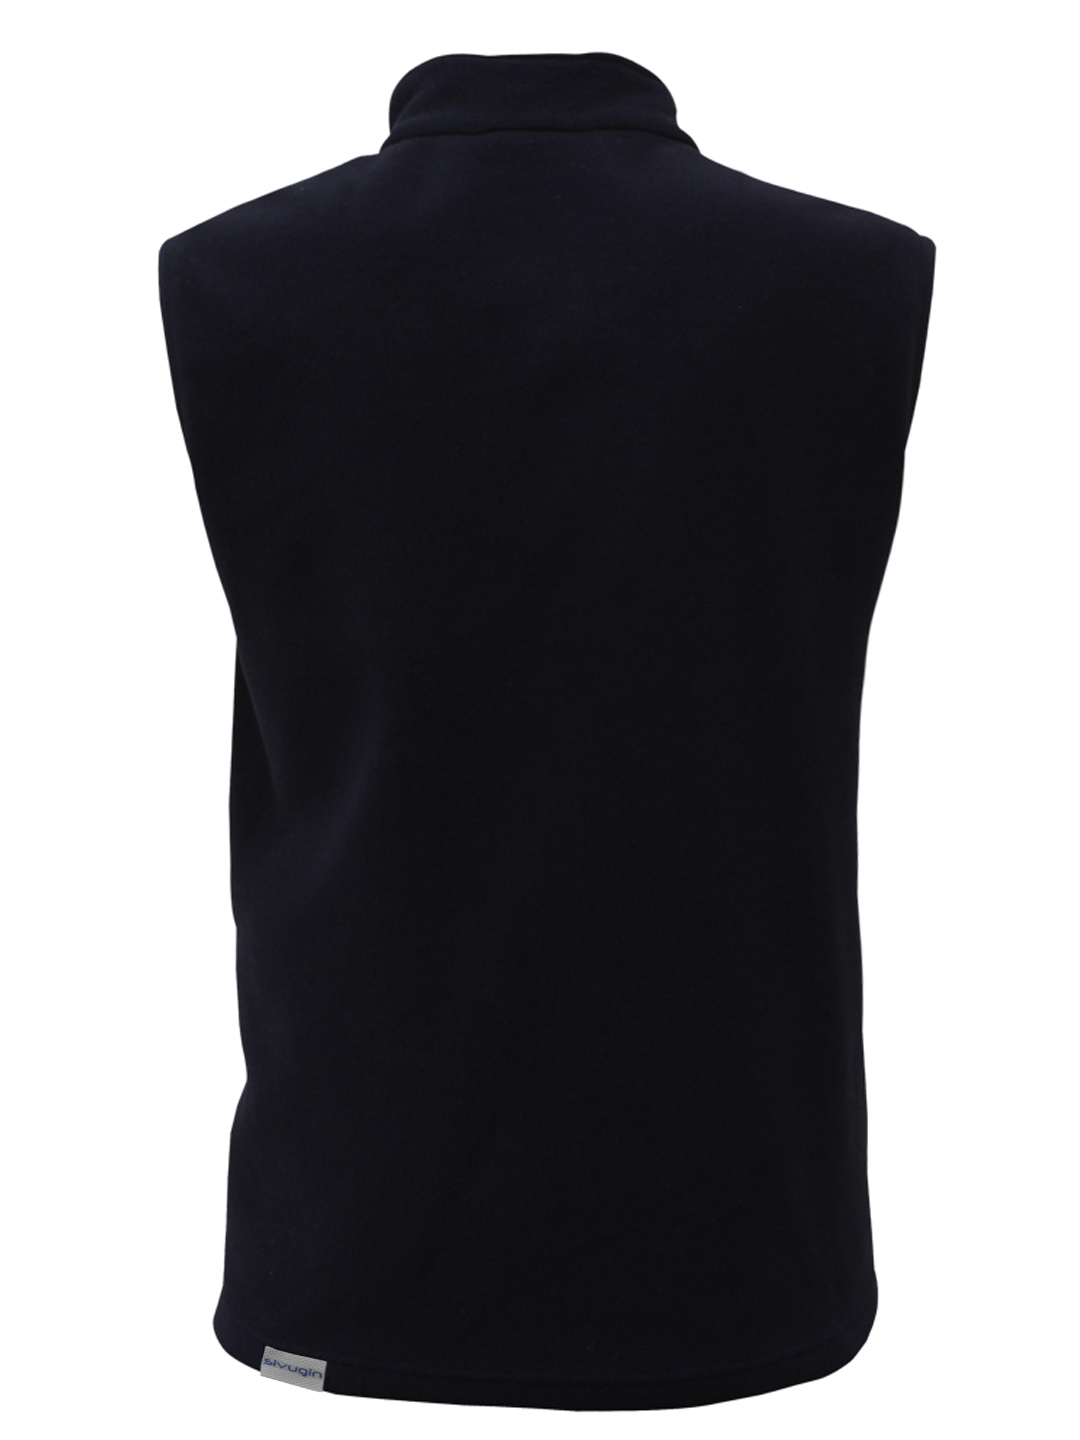 Men's Outdoor Fleece Vest Black - Sivugin Outdoor Clothing